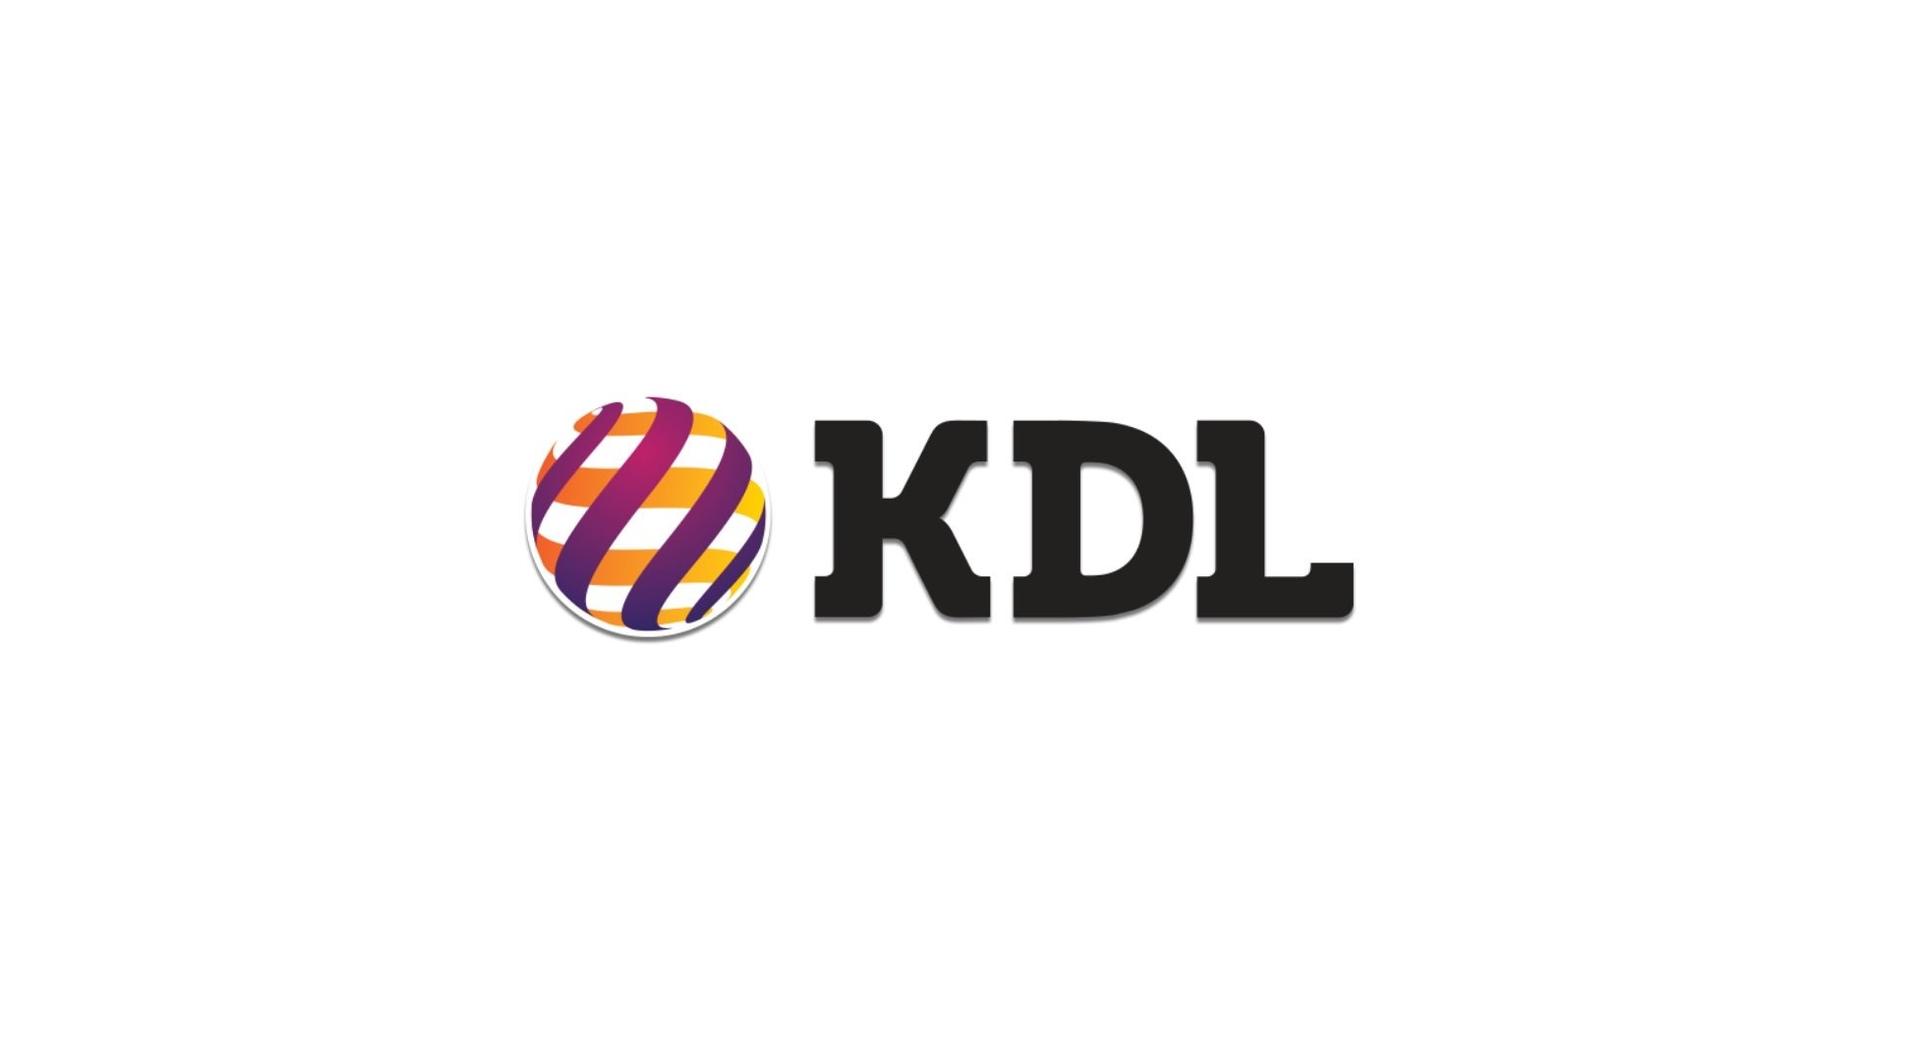 Кдл строителей. Клинико-диагностические лаборатории KDL логотип. KDL анализы логотип. Логотип сайта KDL. KDL эмблема.